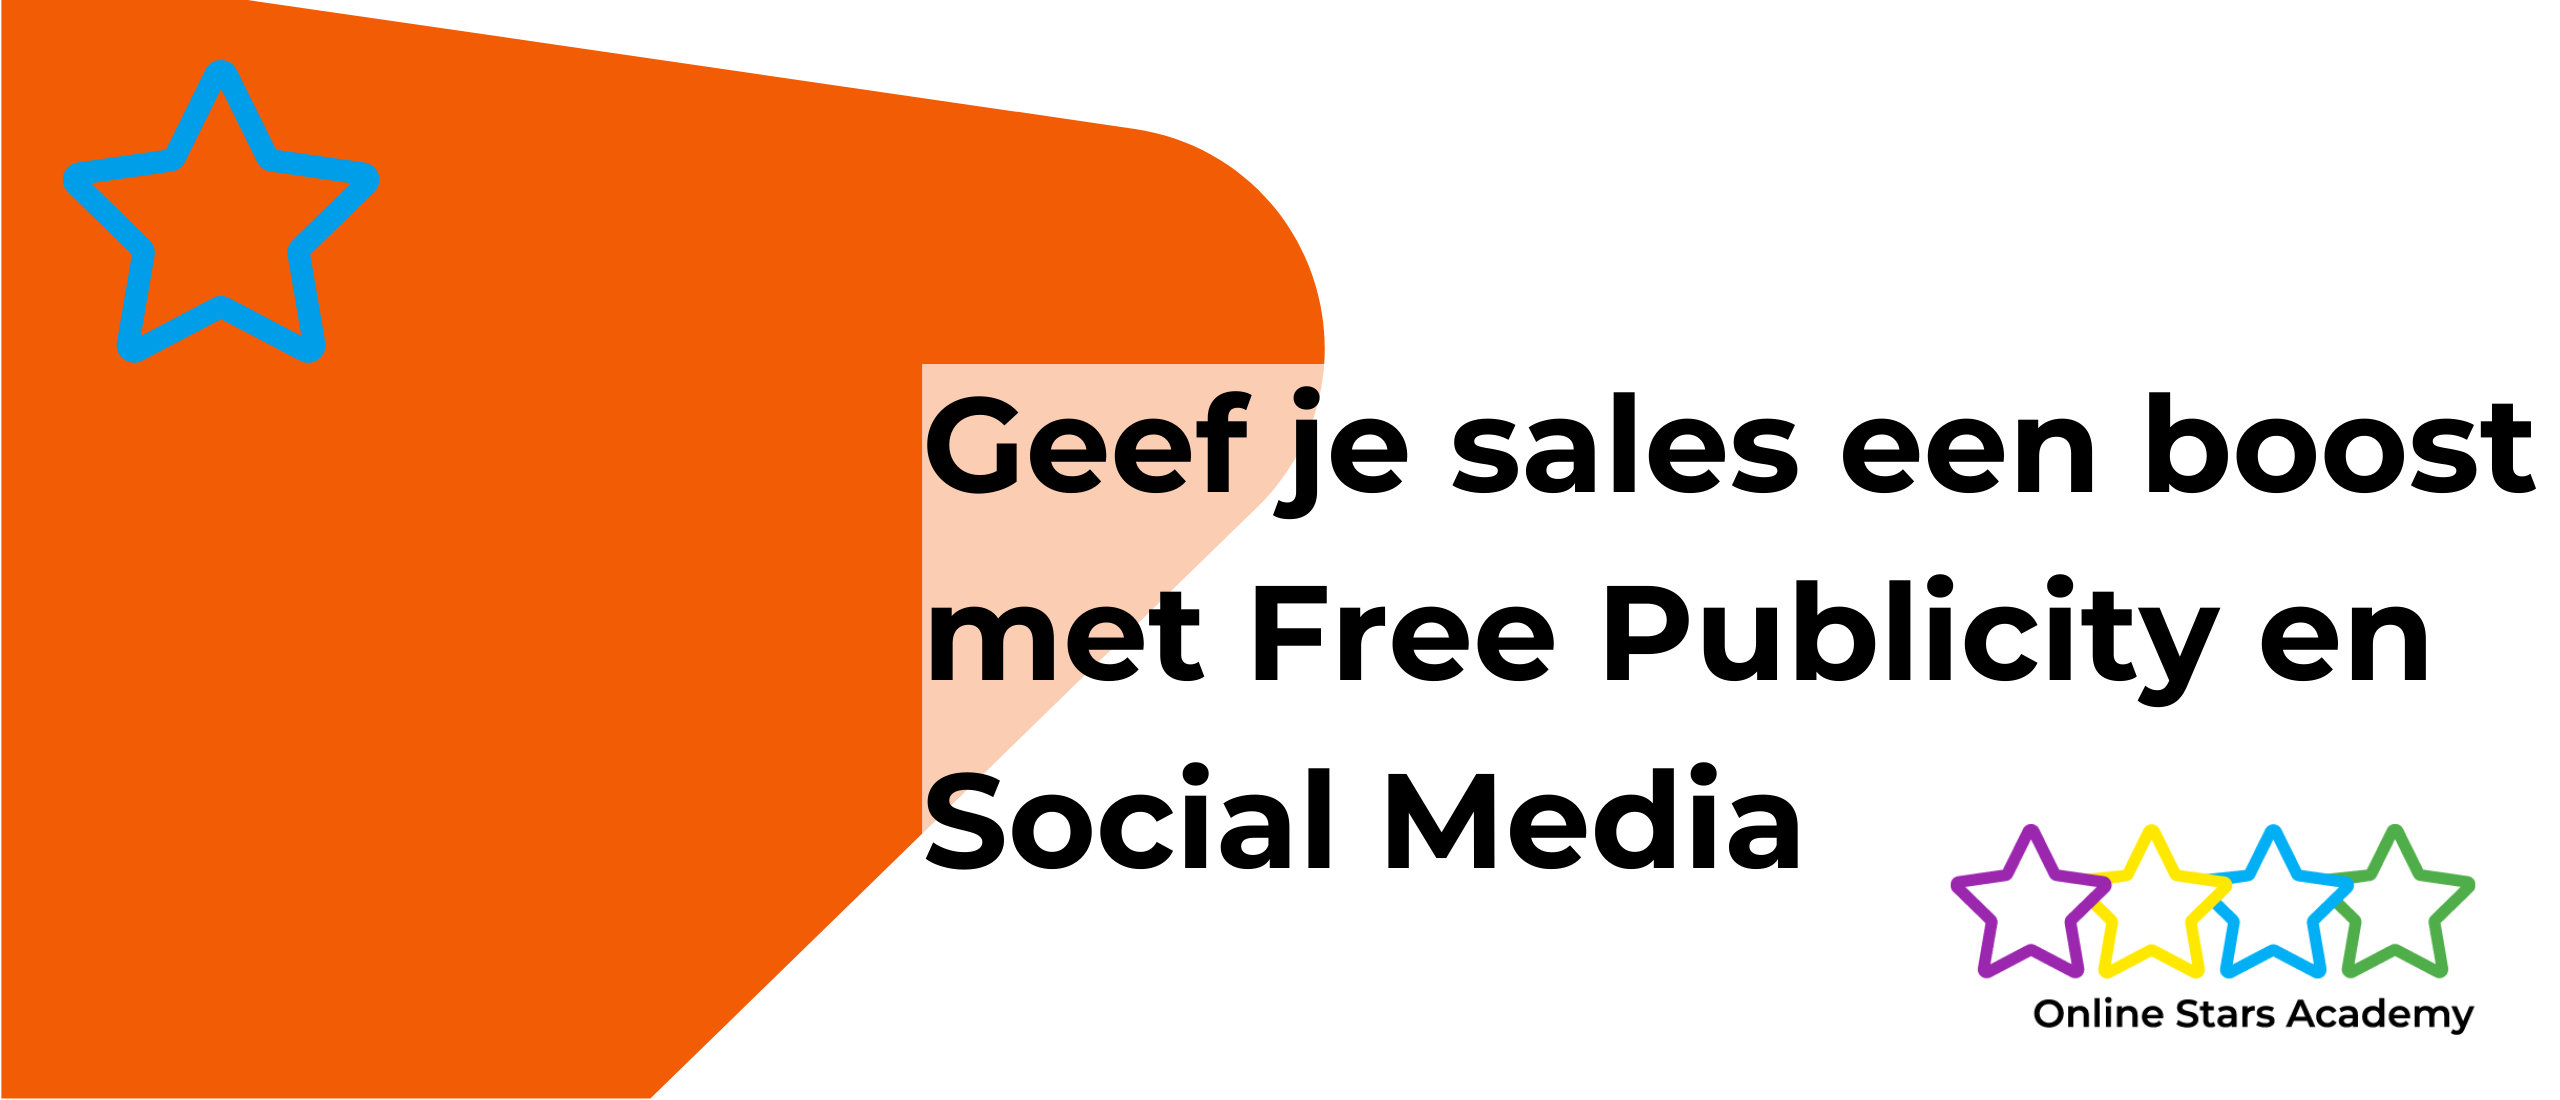 Geef je sales een boost met Free Publicity en Social Media